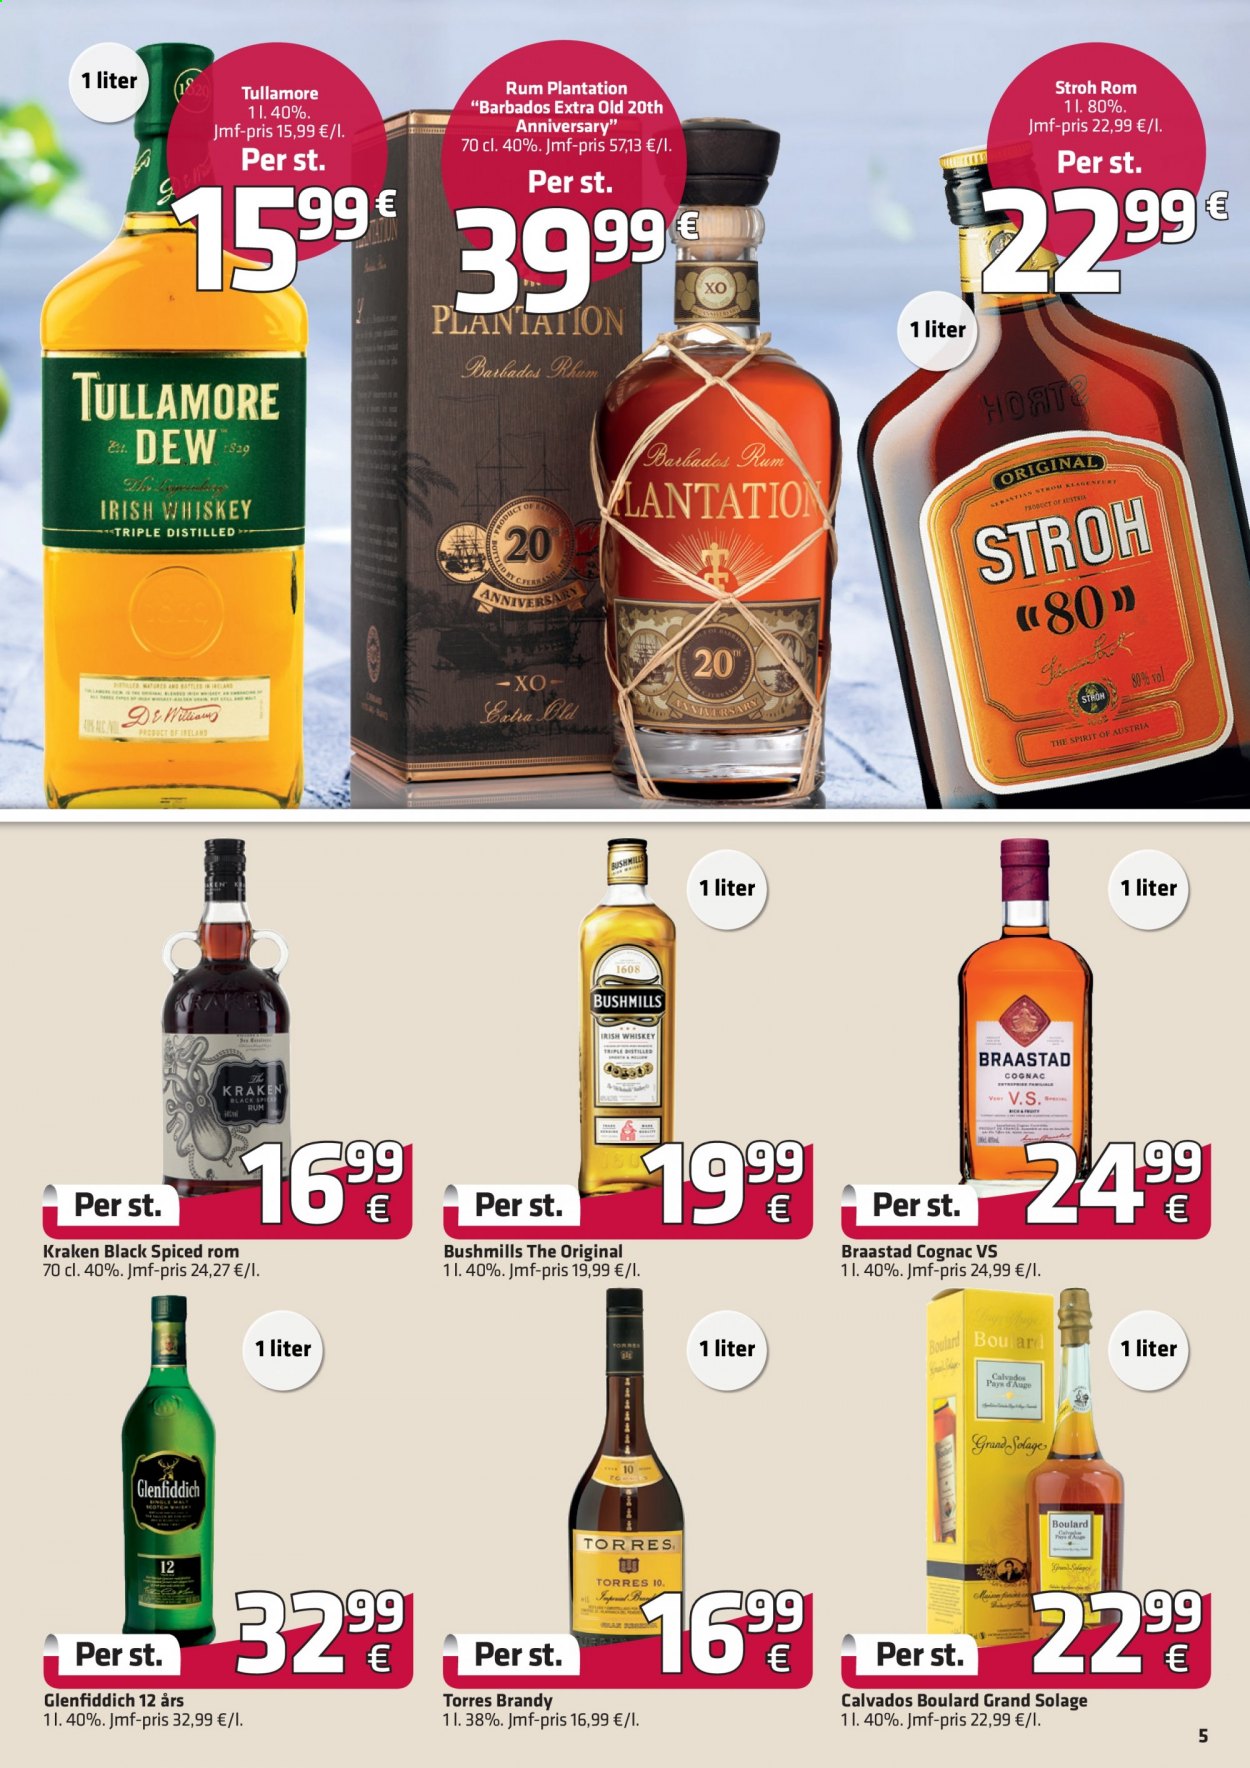 thumbnail - Fleggaard reklamblad - 30/6 2021 - 27/7 2021 - varor från reklamblad - whisky, Braastad Cognac, brandy, Bushmills, calvados, cognac, rum, Plantation, Stroh, Tullamore Dew, Glenfiddich, Irish Whiskey, tree. Sida 7.